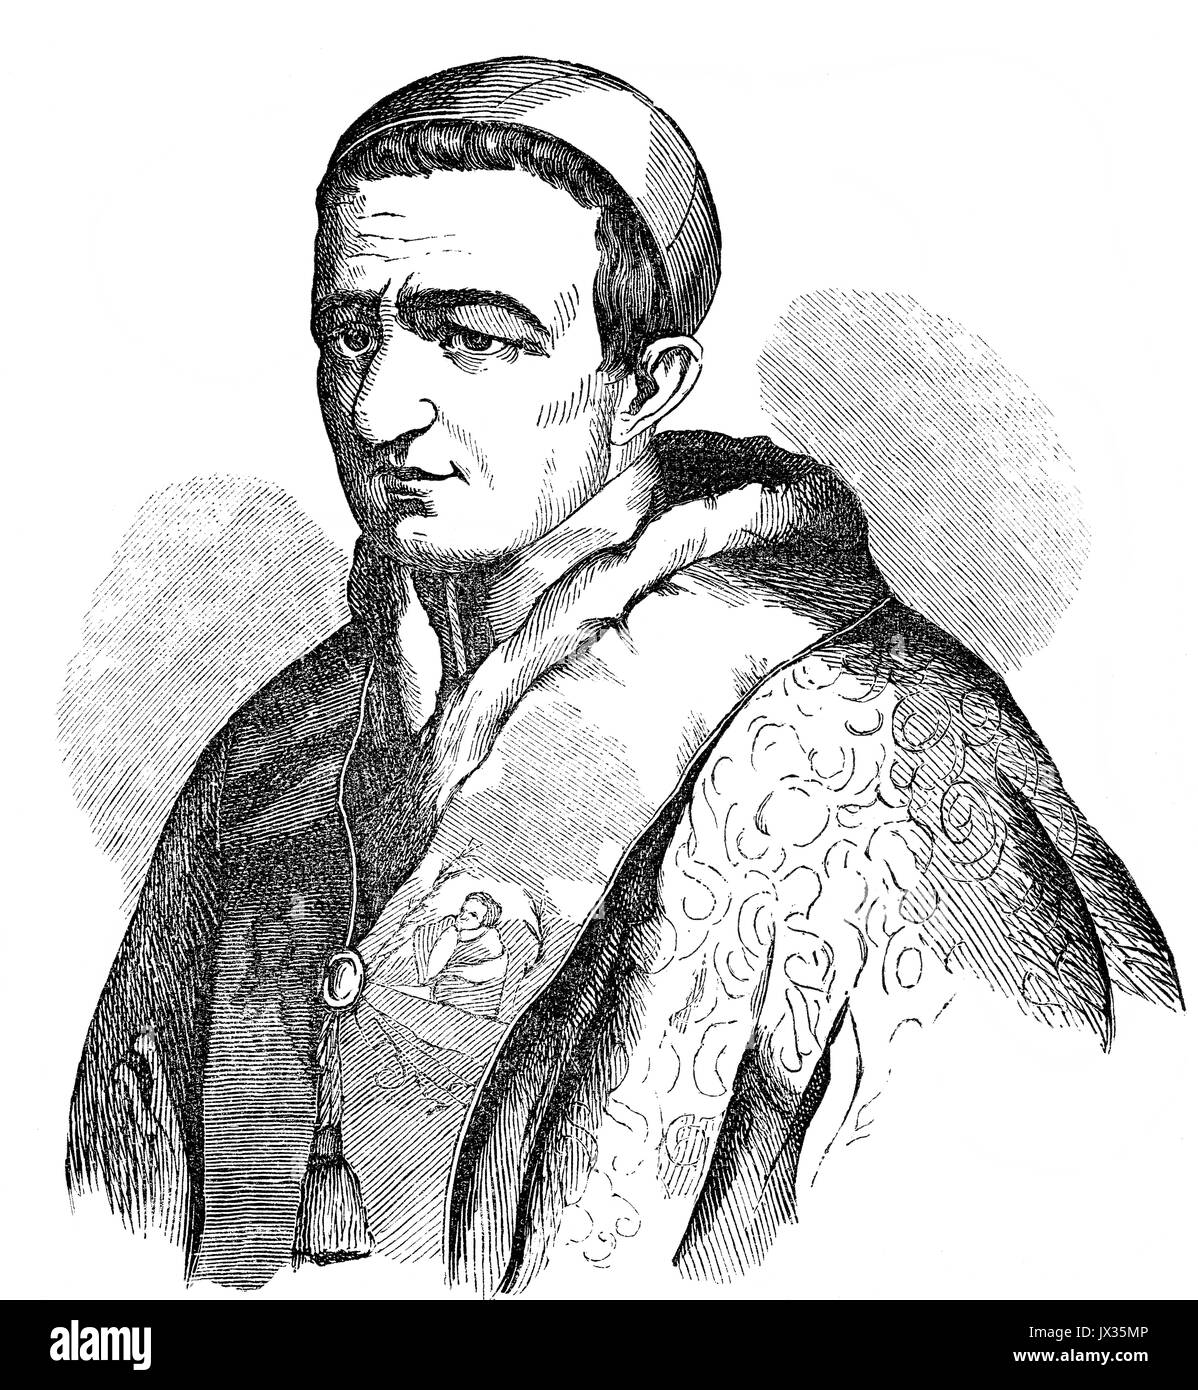 Papst Gregor XVI., 18. September 1765 - vom 1. Juni 1846, regierte als Papst vom 2. Februar 1831 bis zu seinem Tod Stockfoto